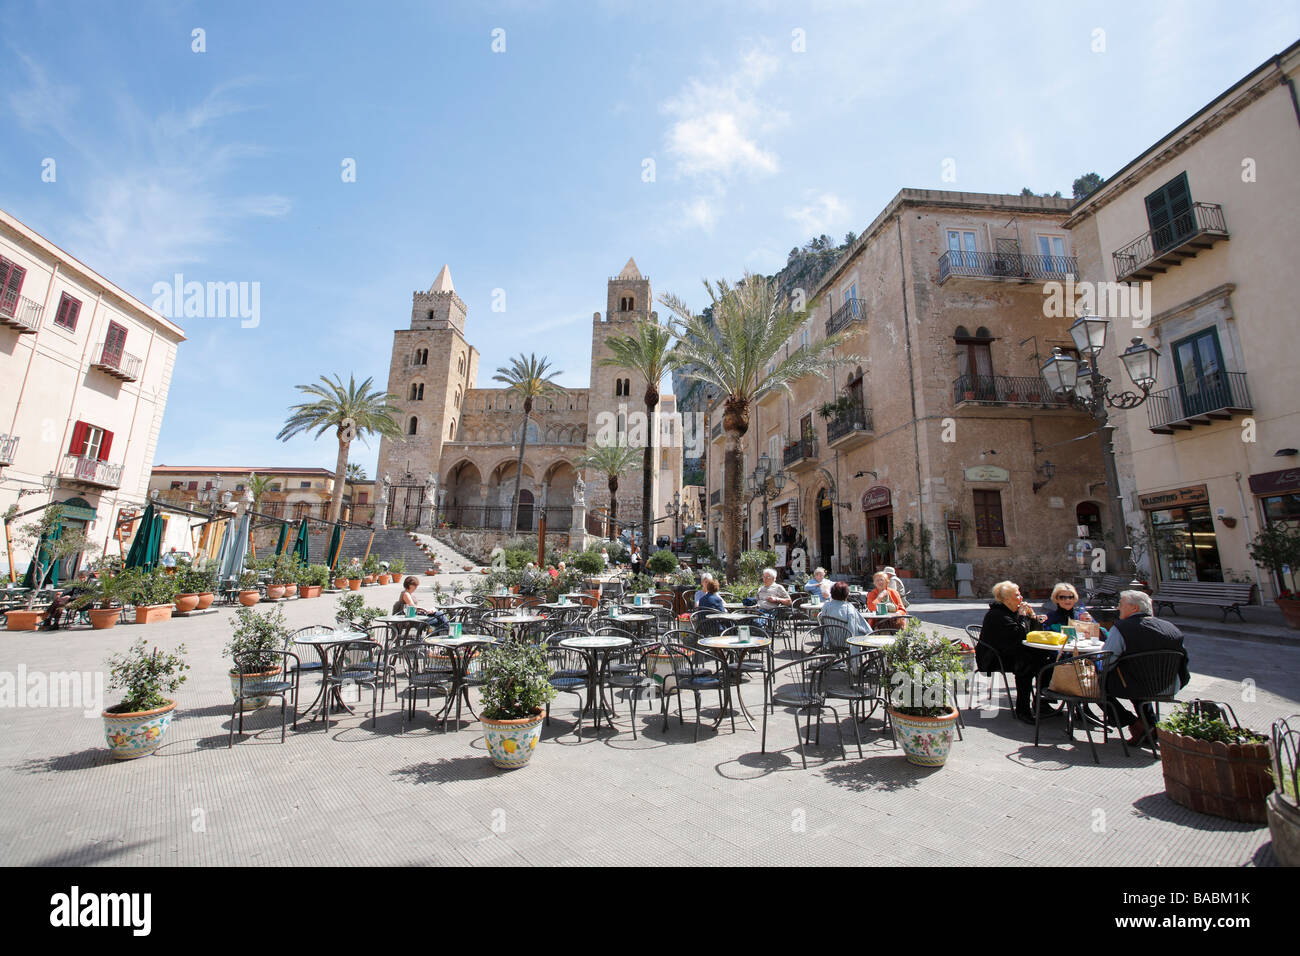 Duomo Square, Cefalu, Sicily, Italy Stock Photo